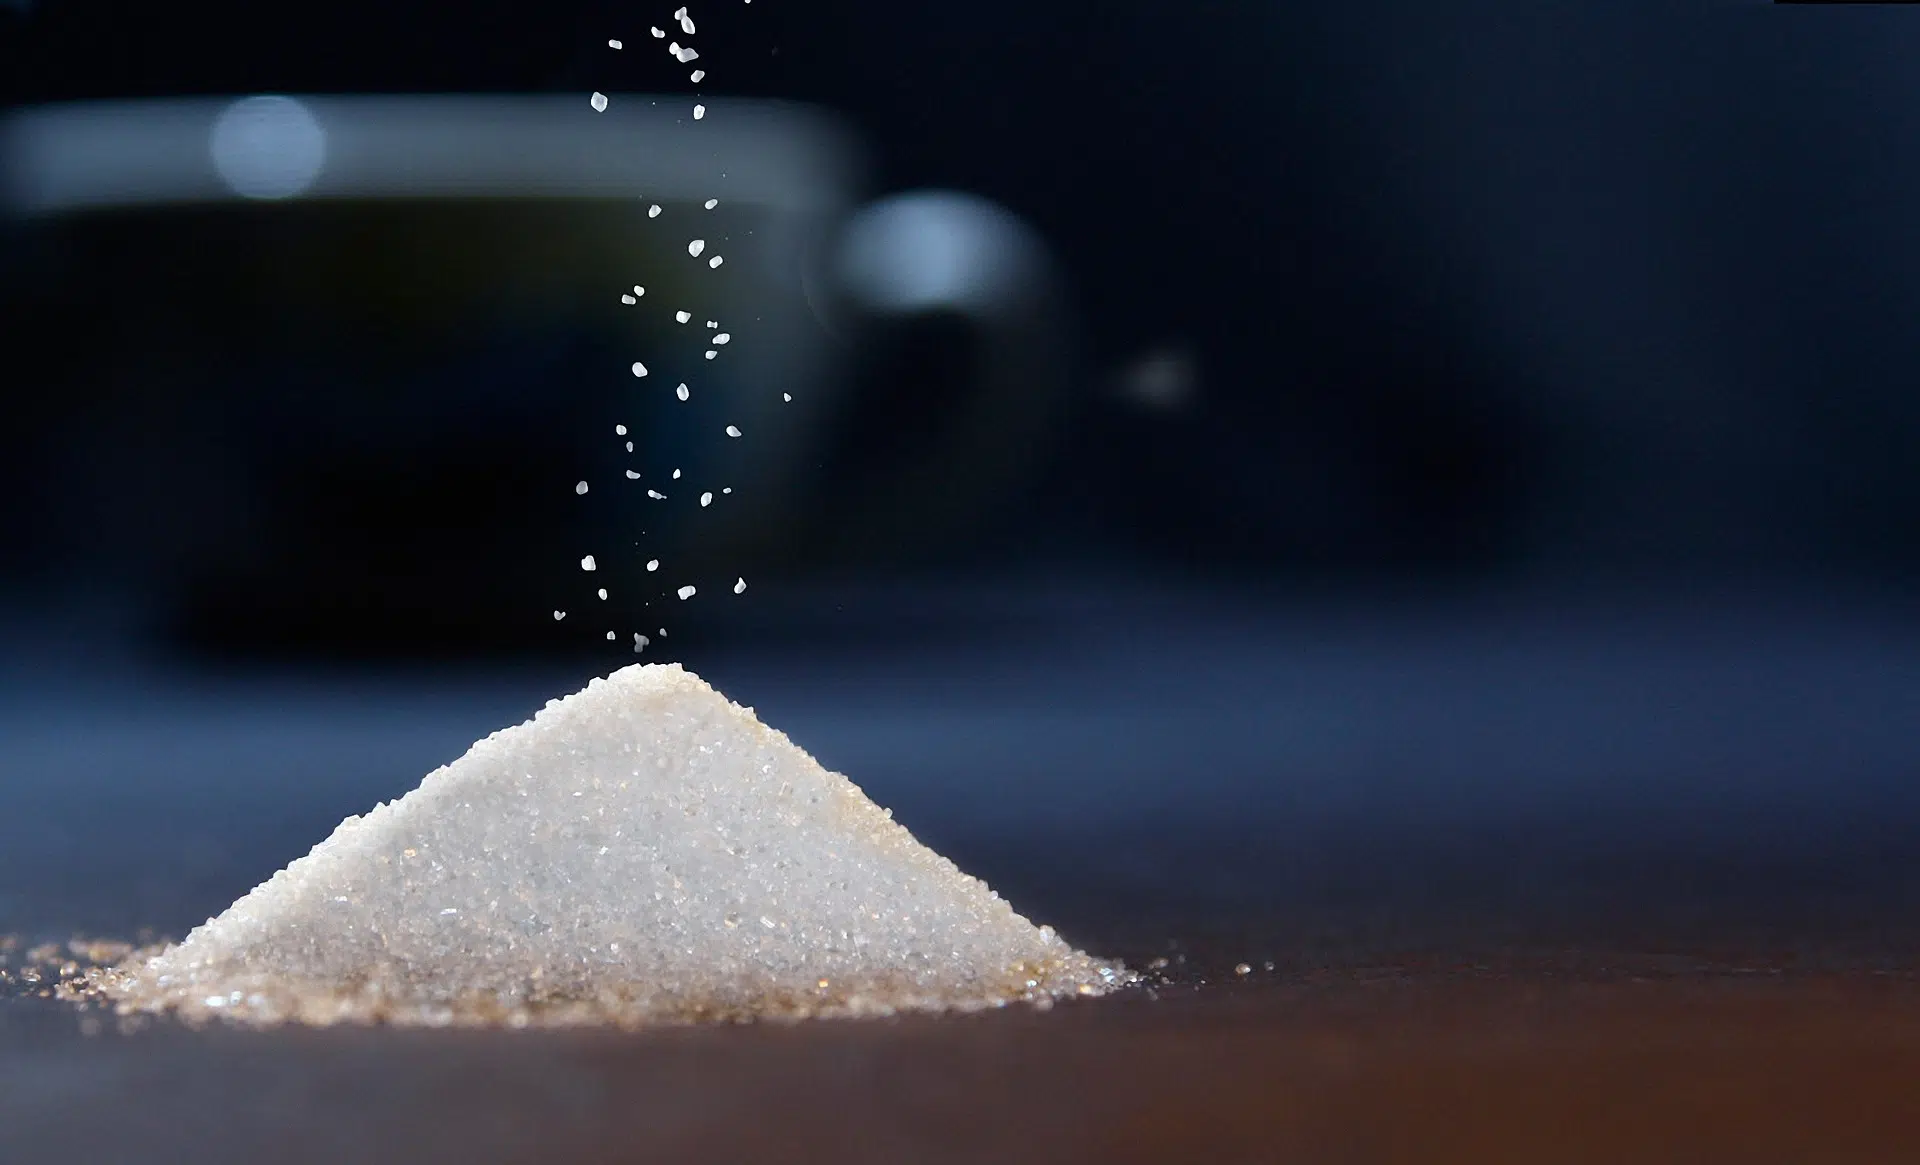 Azúcar: Todo lo que necesitas saber para reducir su consumo